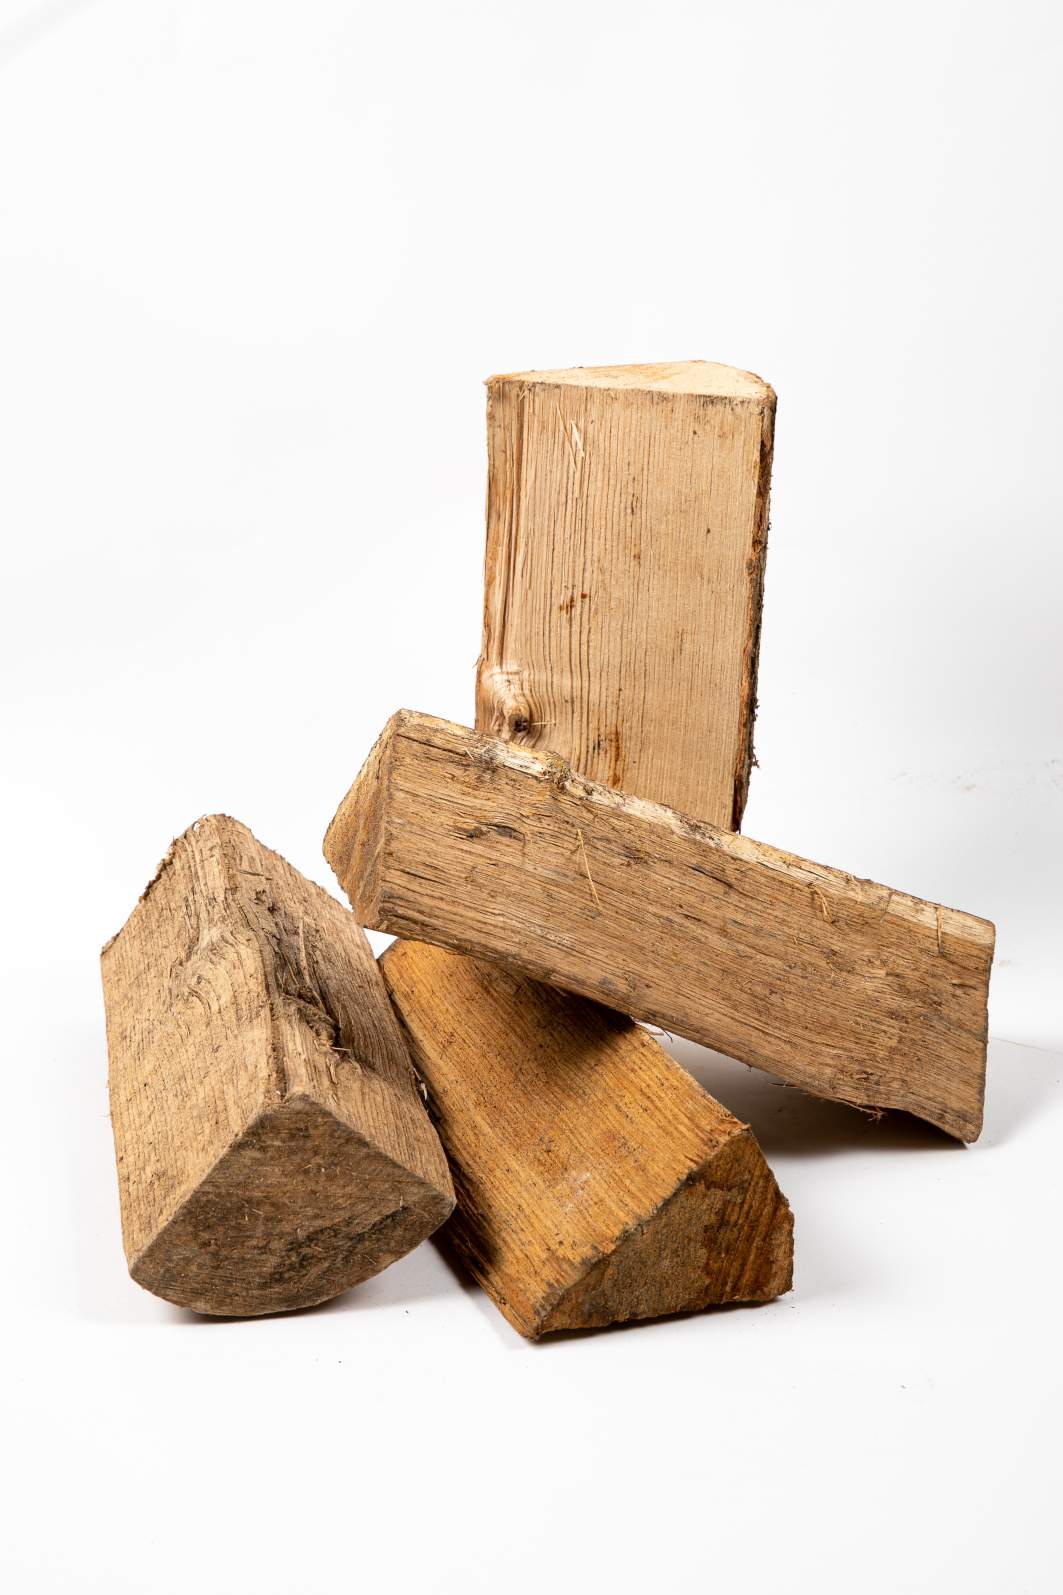 1 stère de bois de chauffage chêne sec bûches de 33cm - Mr.Bricolage